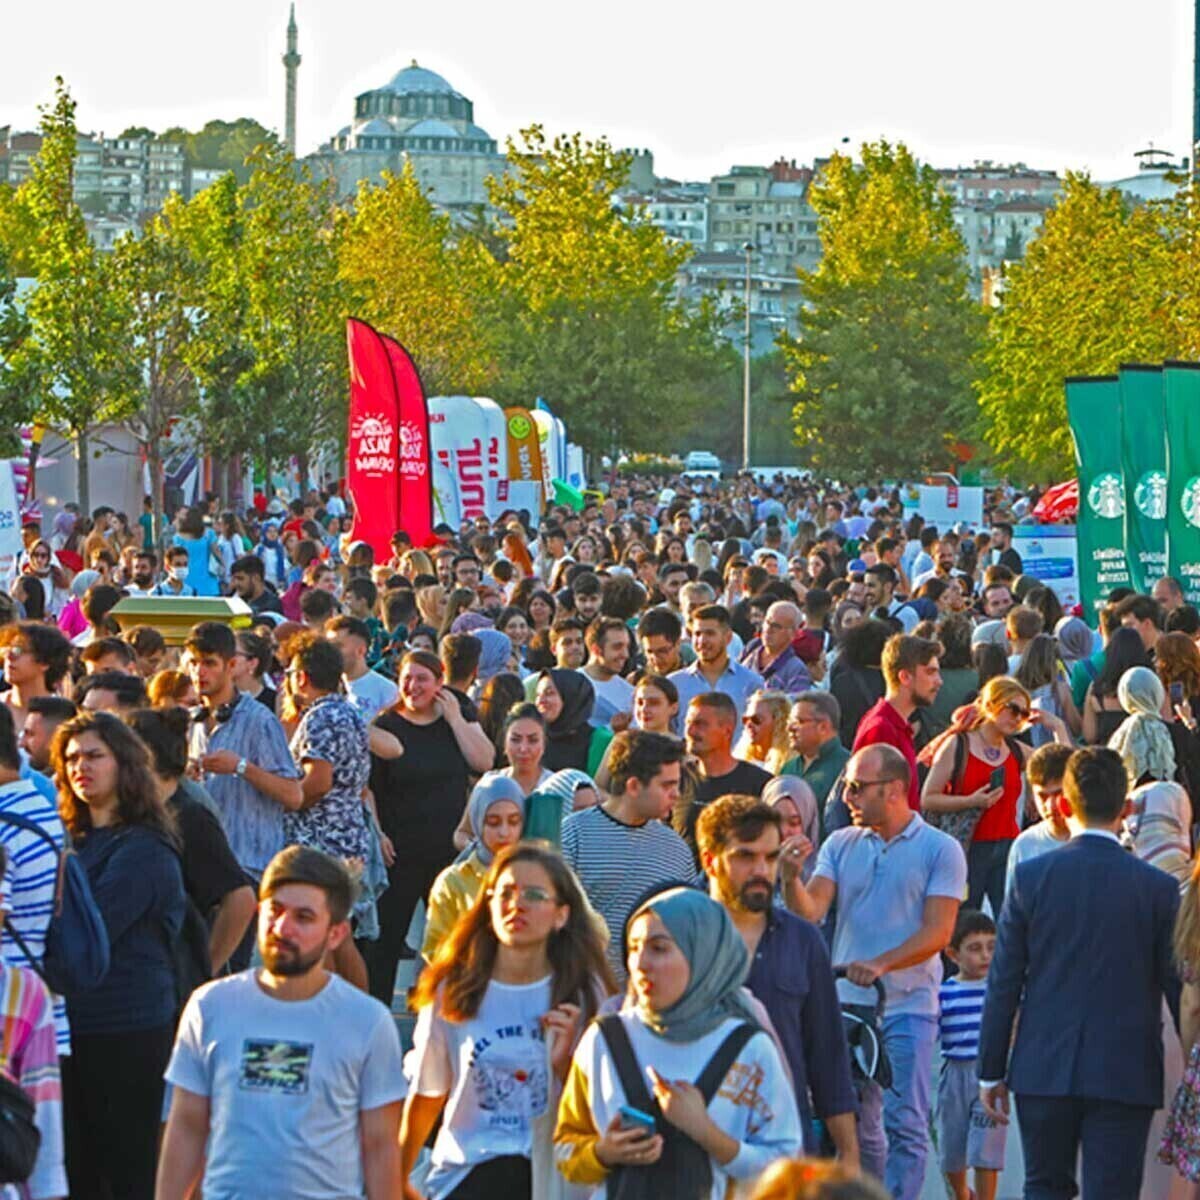 23 Temmuz Pazar Hayko Cepkin Konseri ve Onlarca Aktivite Dahil İstanbul Festivali Giriş Bileti